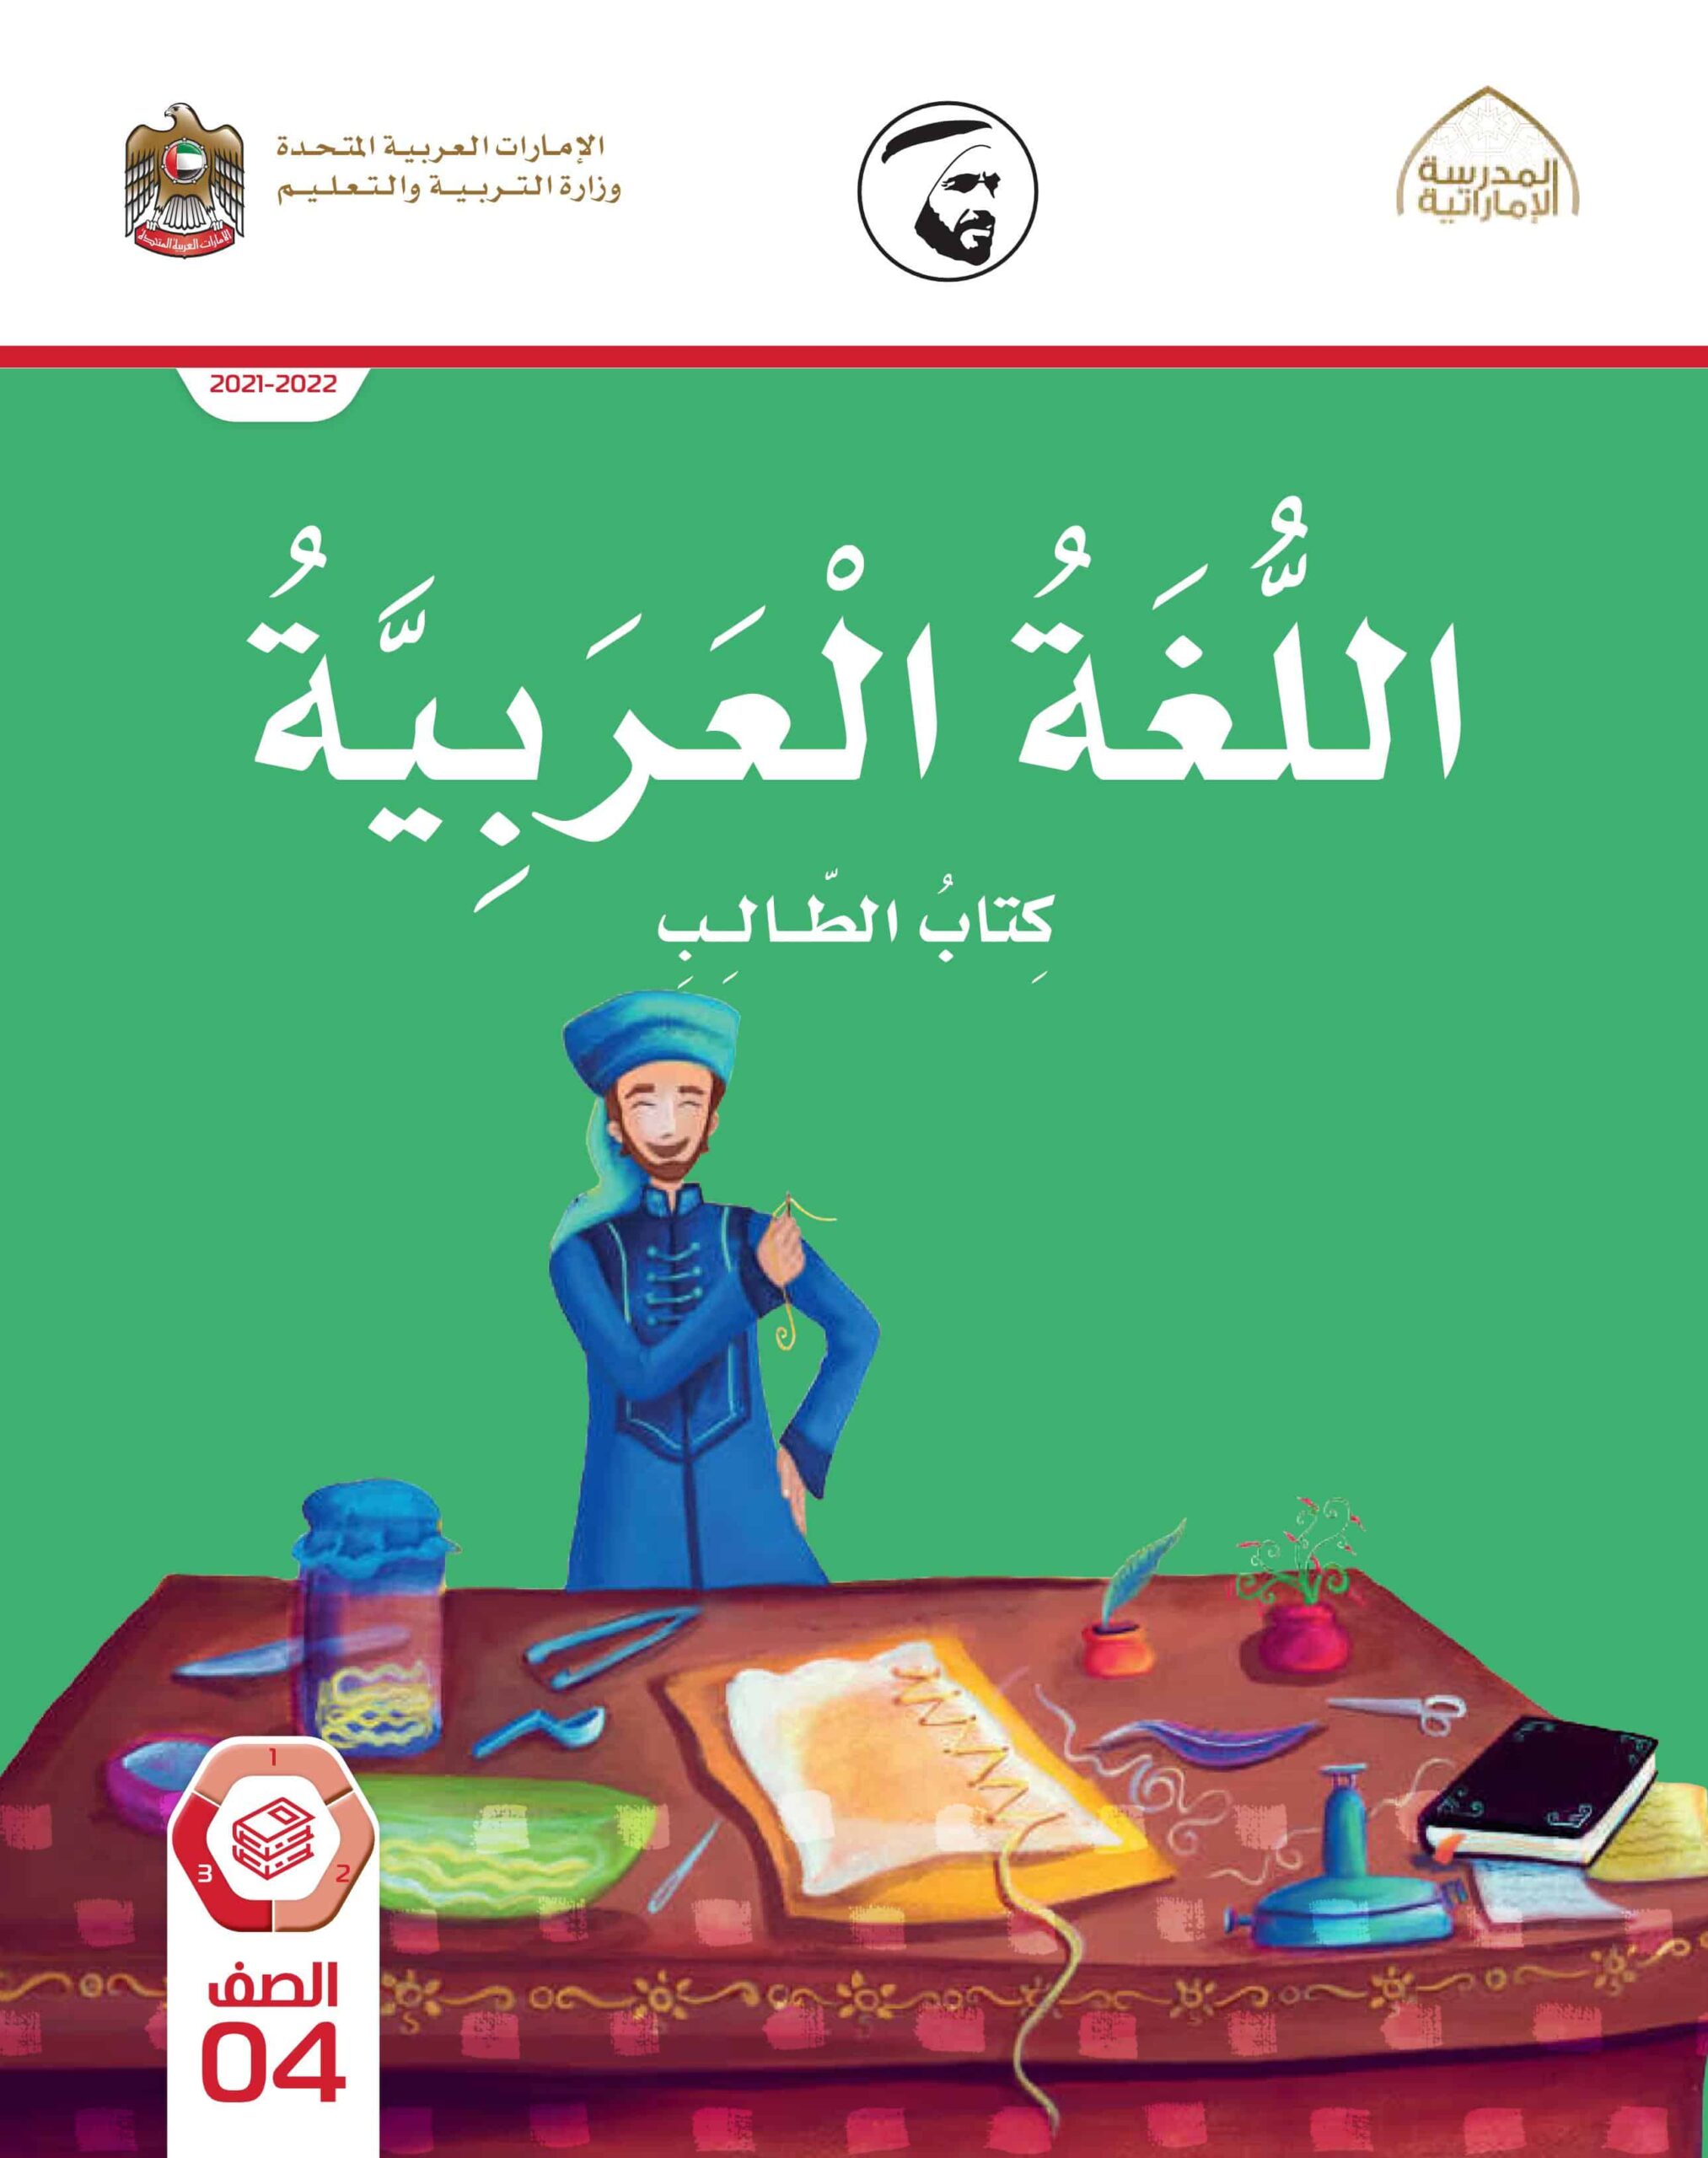 كتاب الطالب اللغة العربية الصف الرابع الفصل الدراسي الثالث 2021-2022